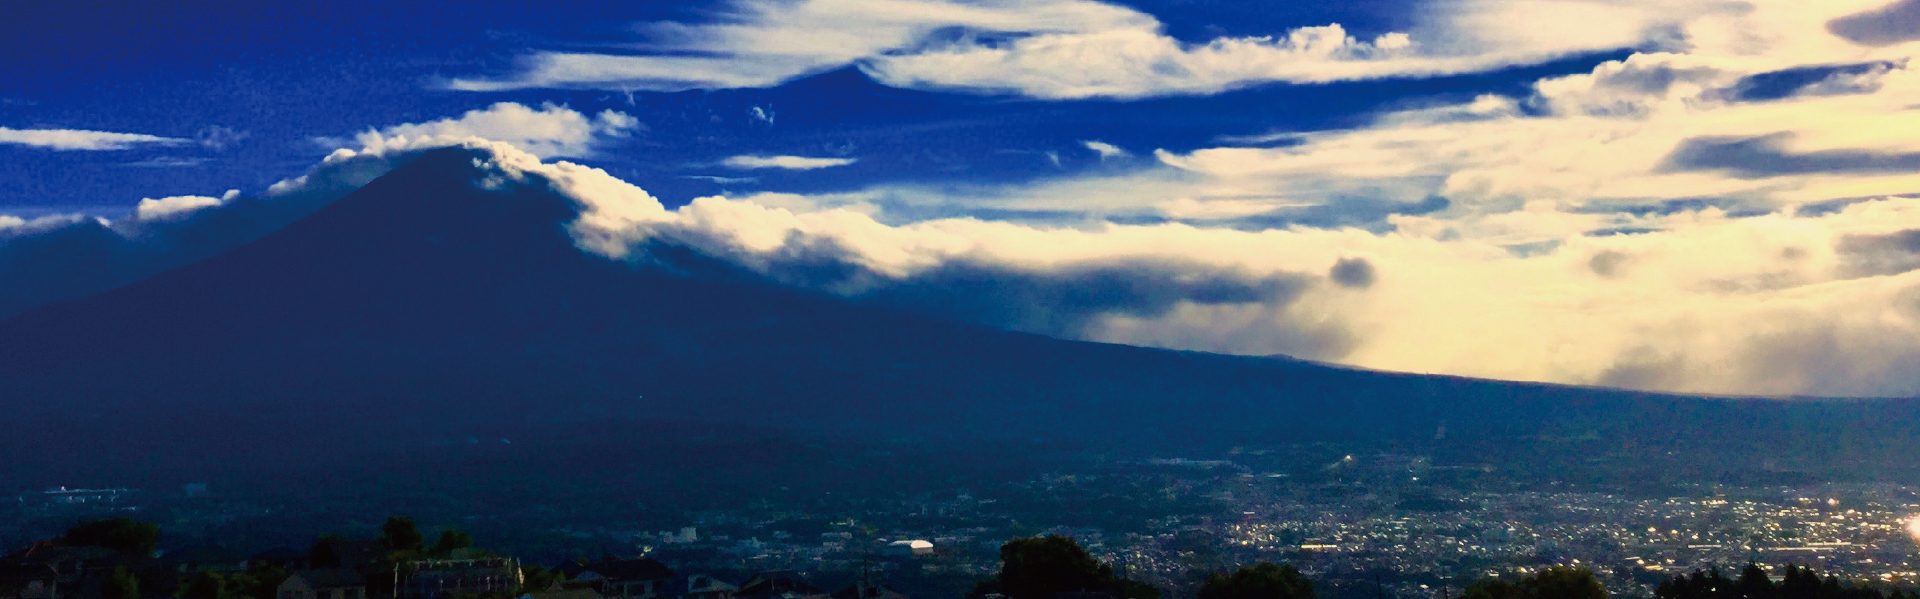 富士山が望める高台にある青木平